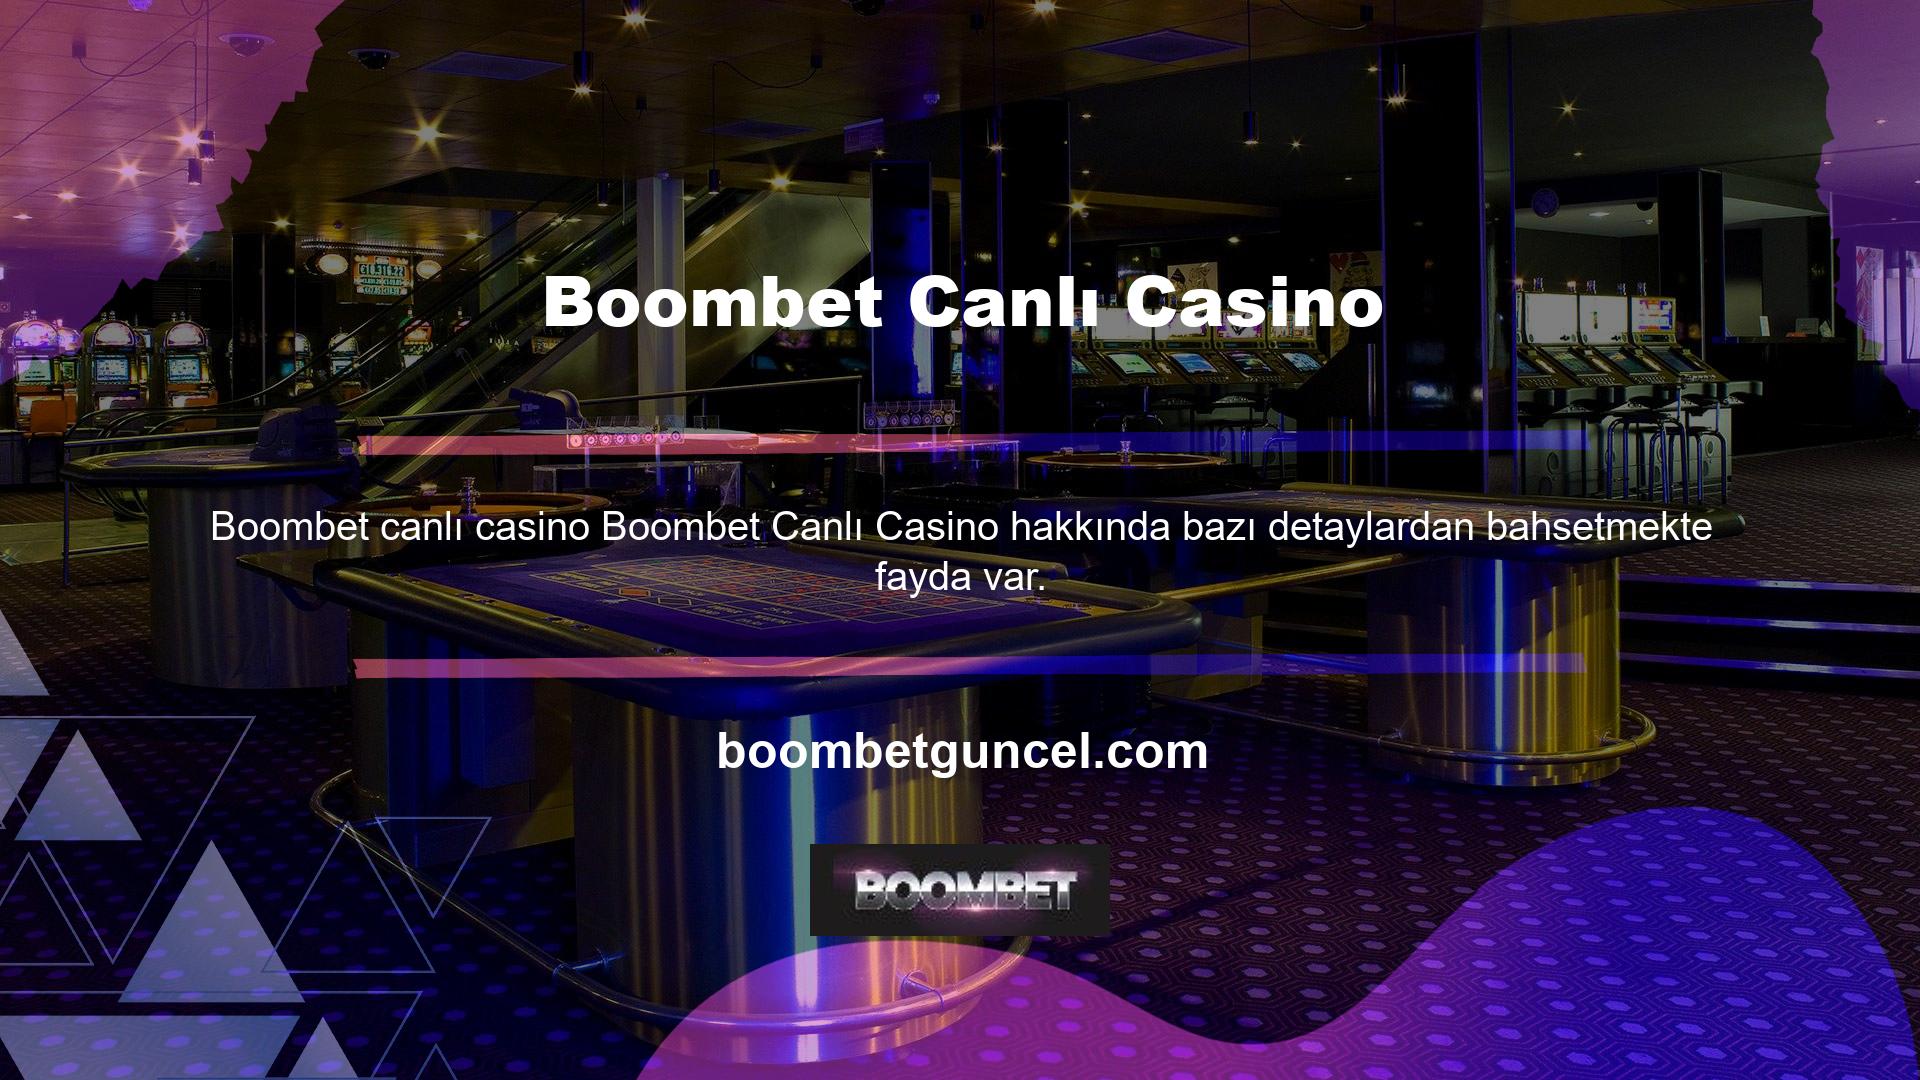 Öncelikle site ülkemizdeki yabancı casino sitelerinden biridir